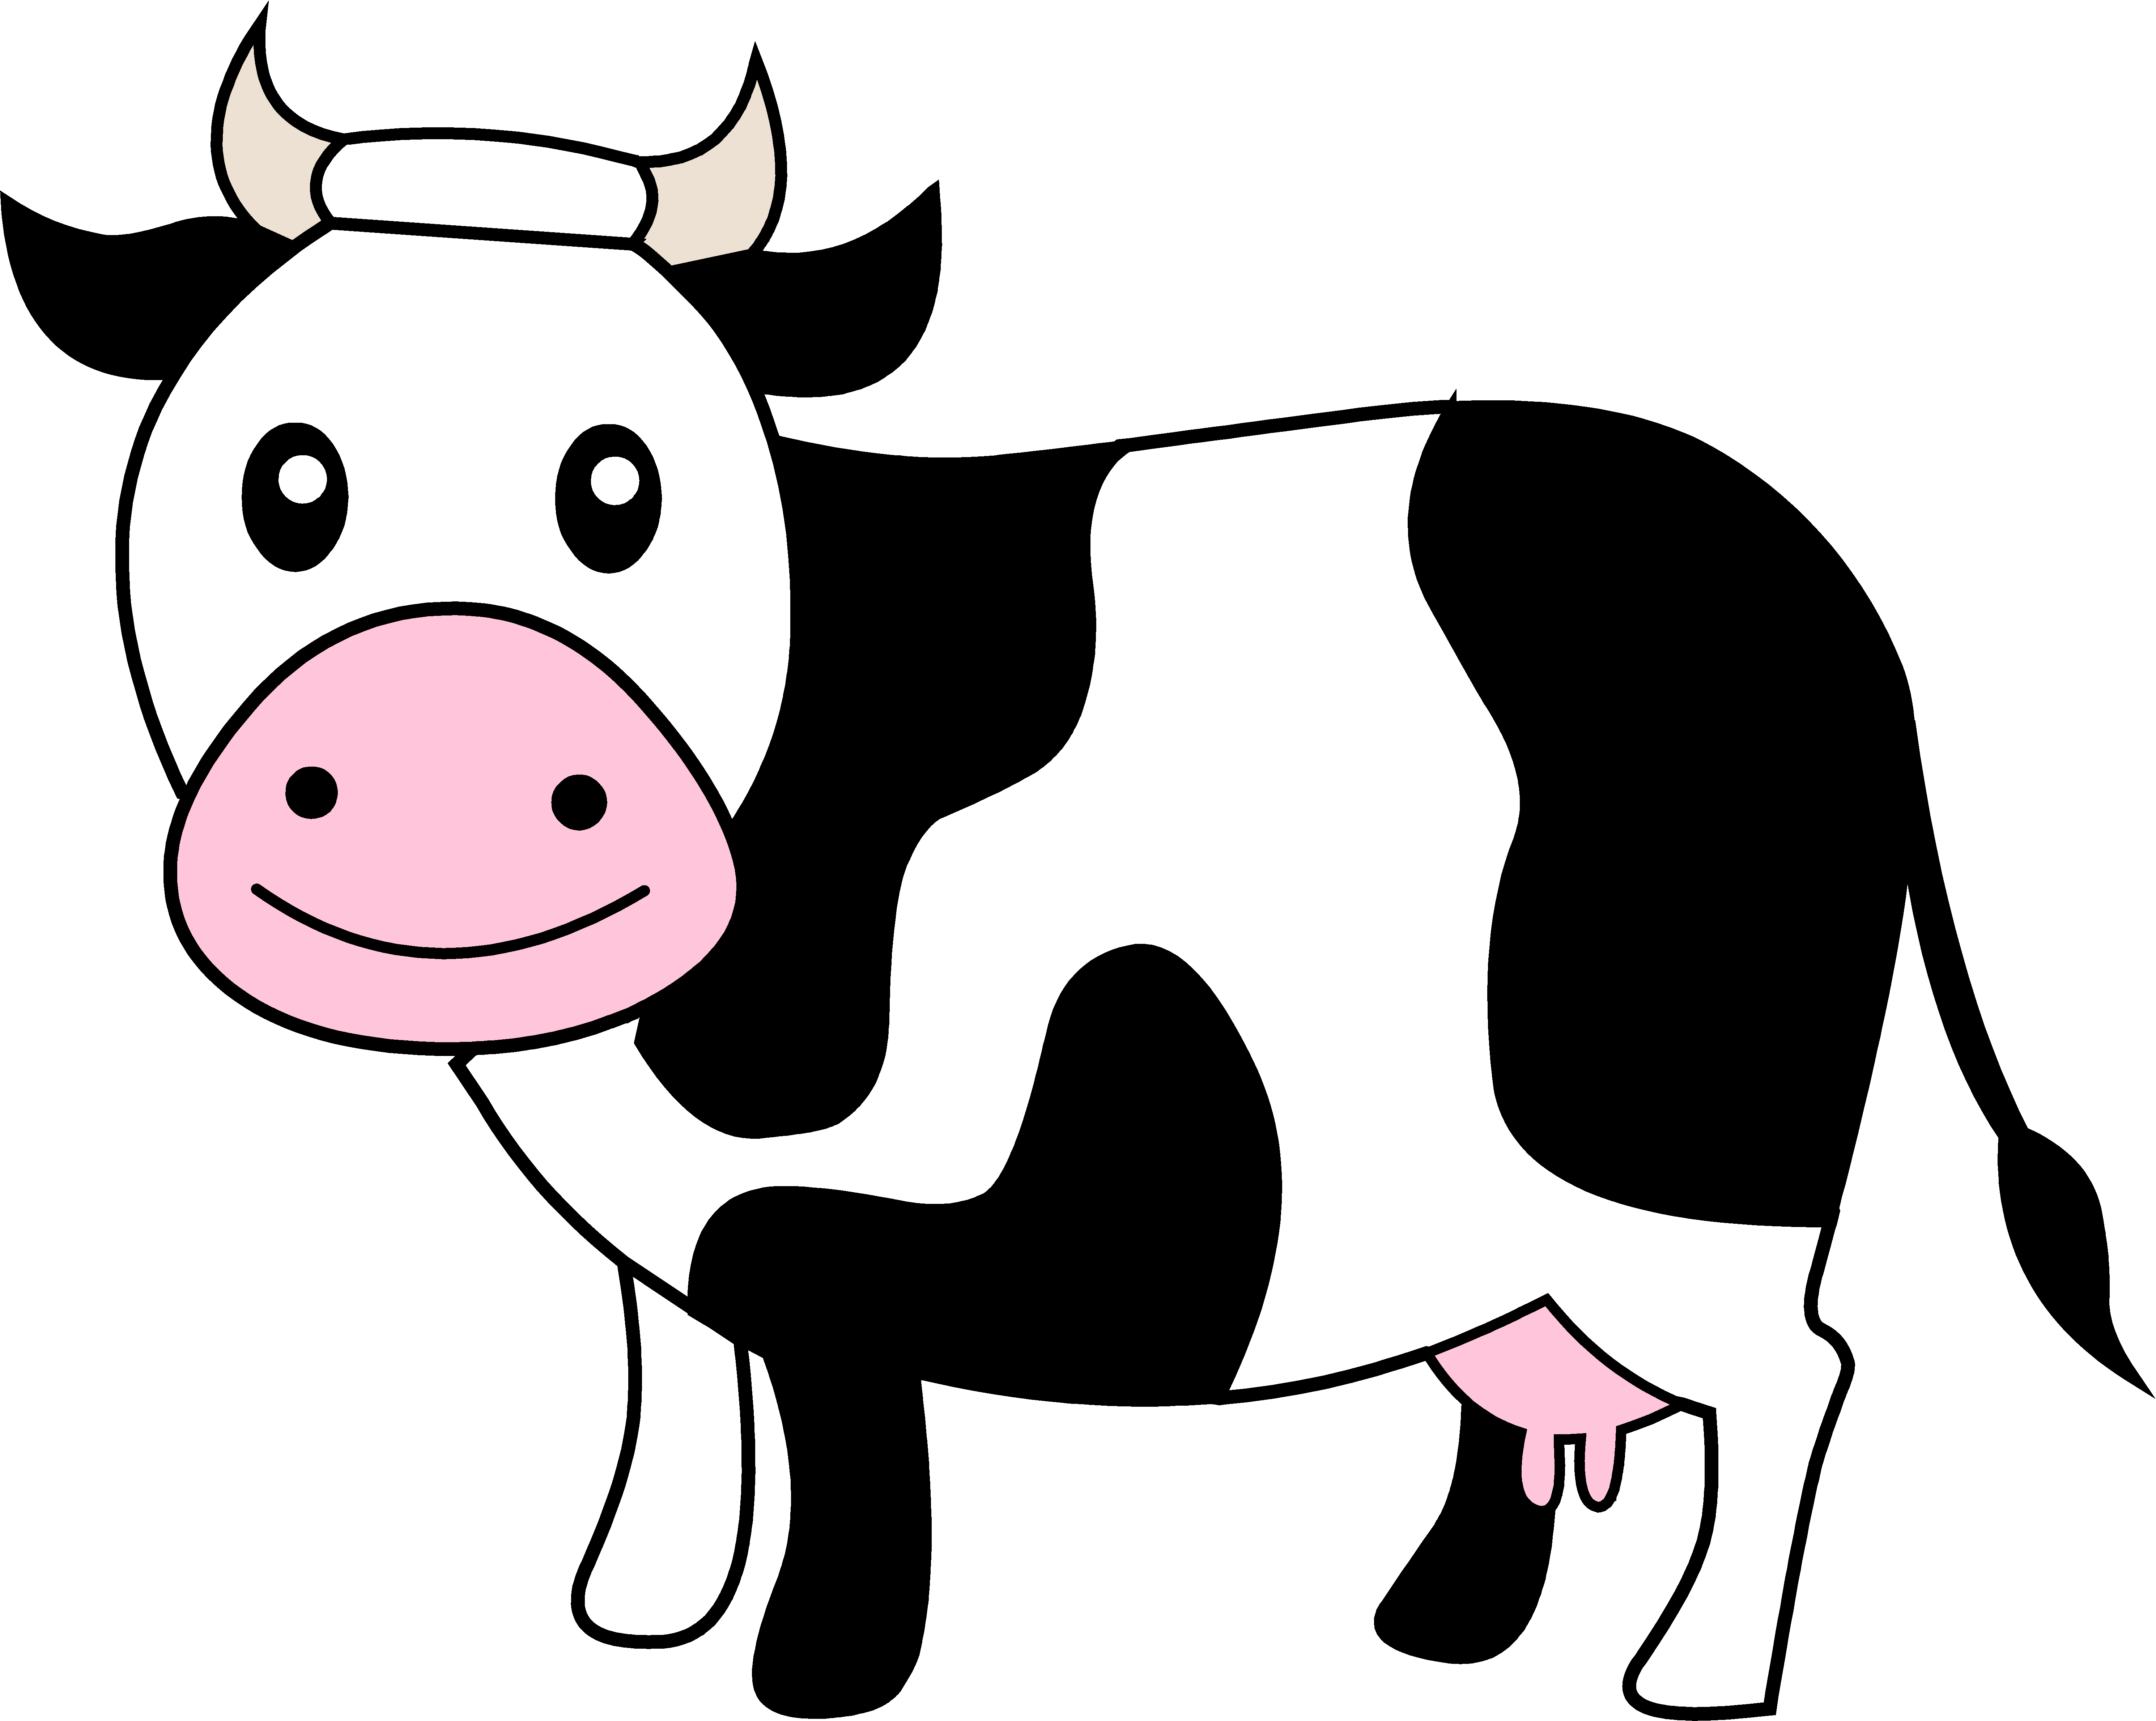 Cow Clipart & Cow Clip Art Images.